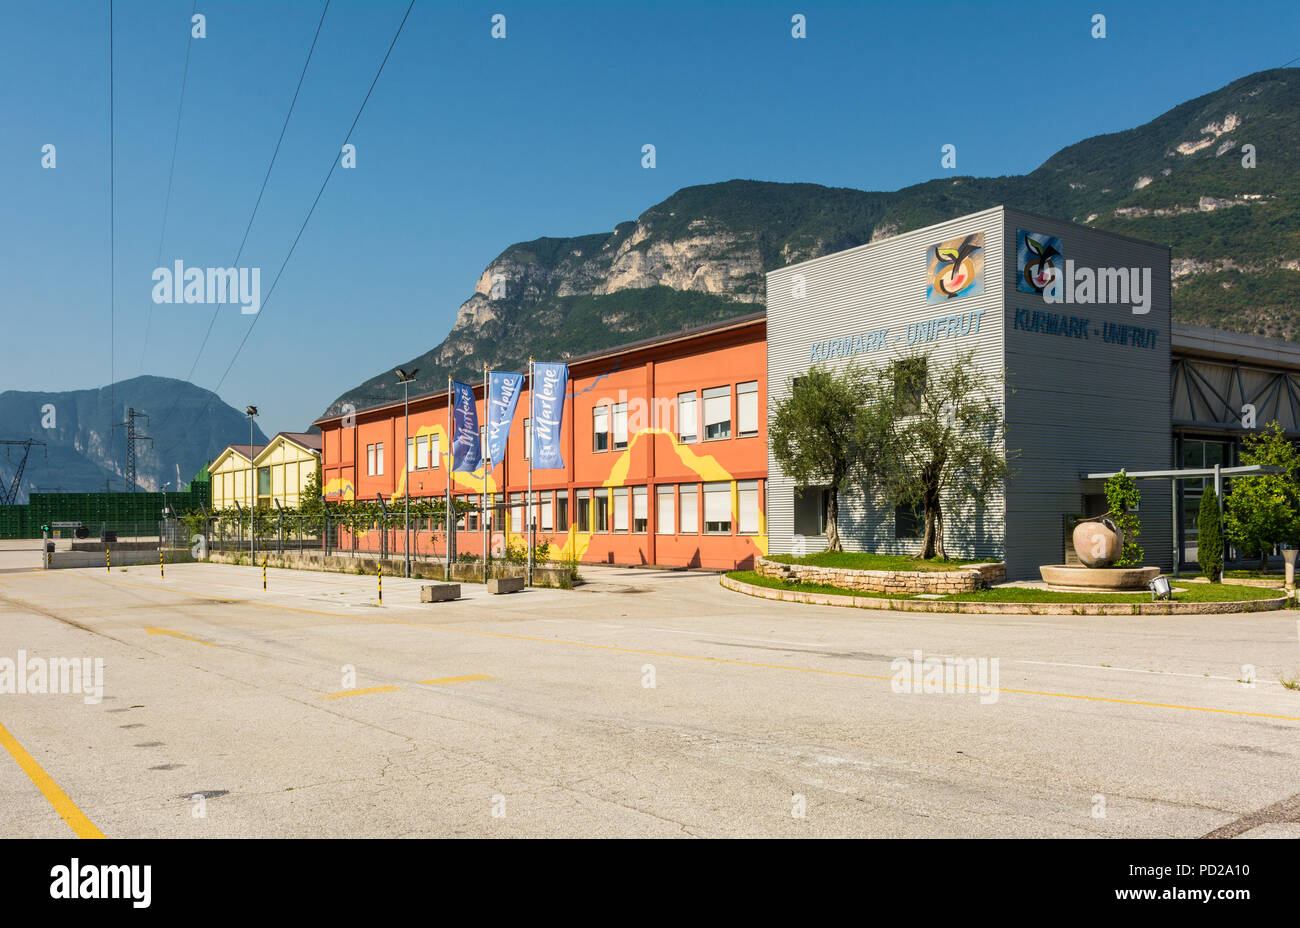 Magrè sulla Strada del Vino Alto Adige, Bolzano, Italia -Coop. Kurmark-Unifruit edificio: centro di trasformazione e vendita di apple 'Marlene'. Foto Stock